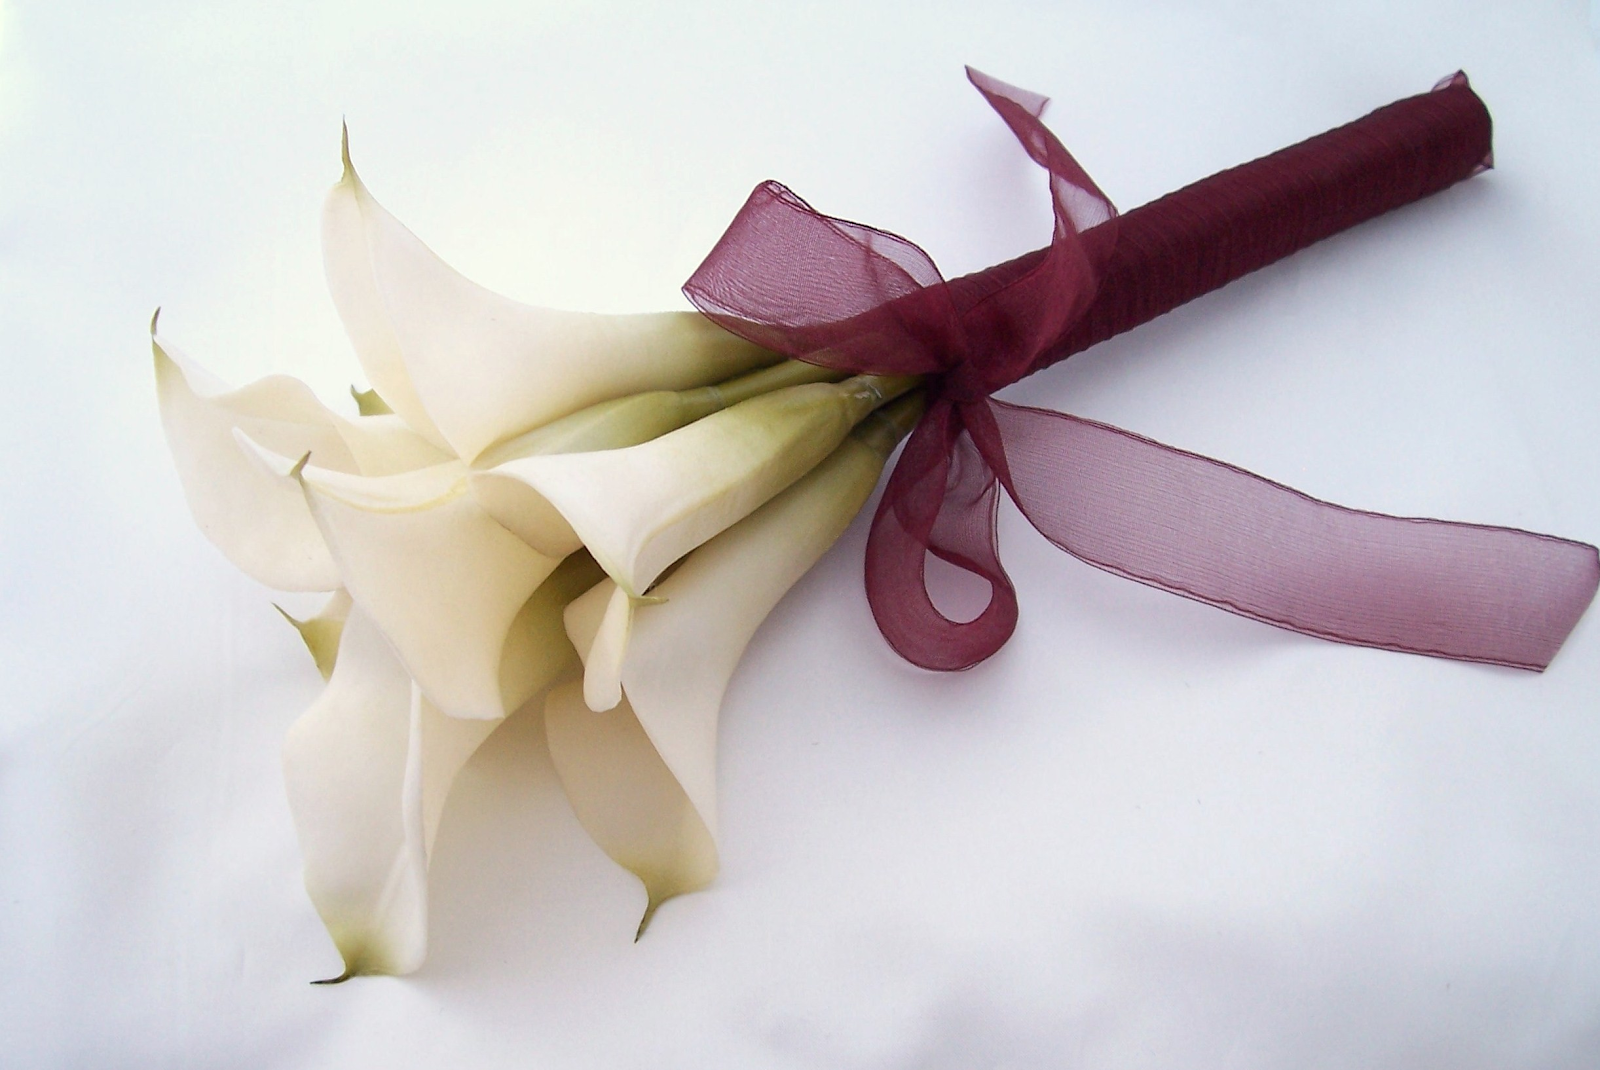 Hoa Calla với màu sắc giản đơn cũng là quà tặng hợp lý cho bạn gái ngày 8/3